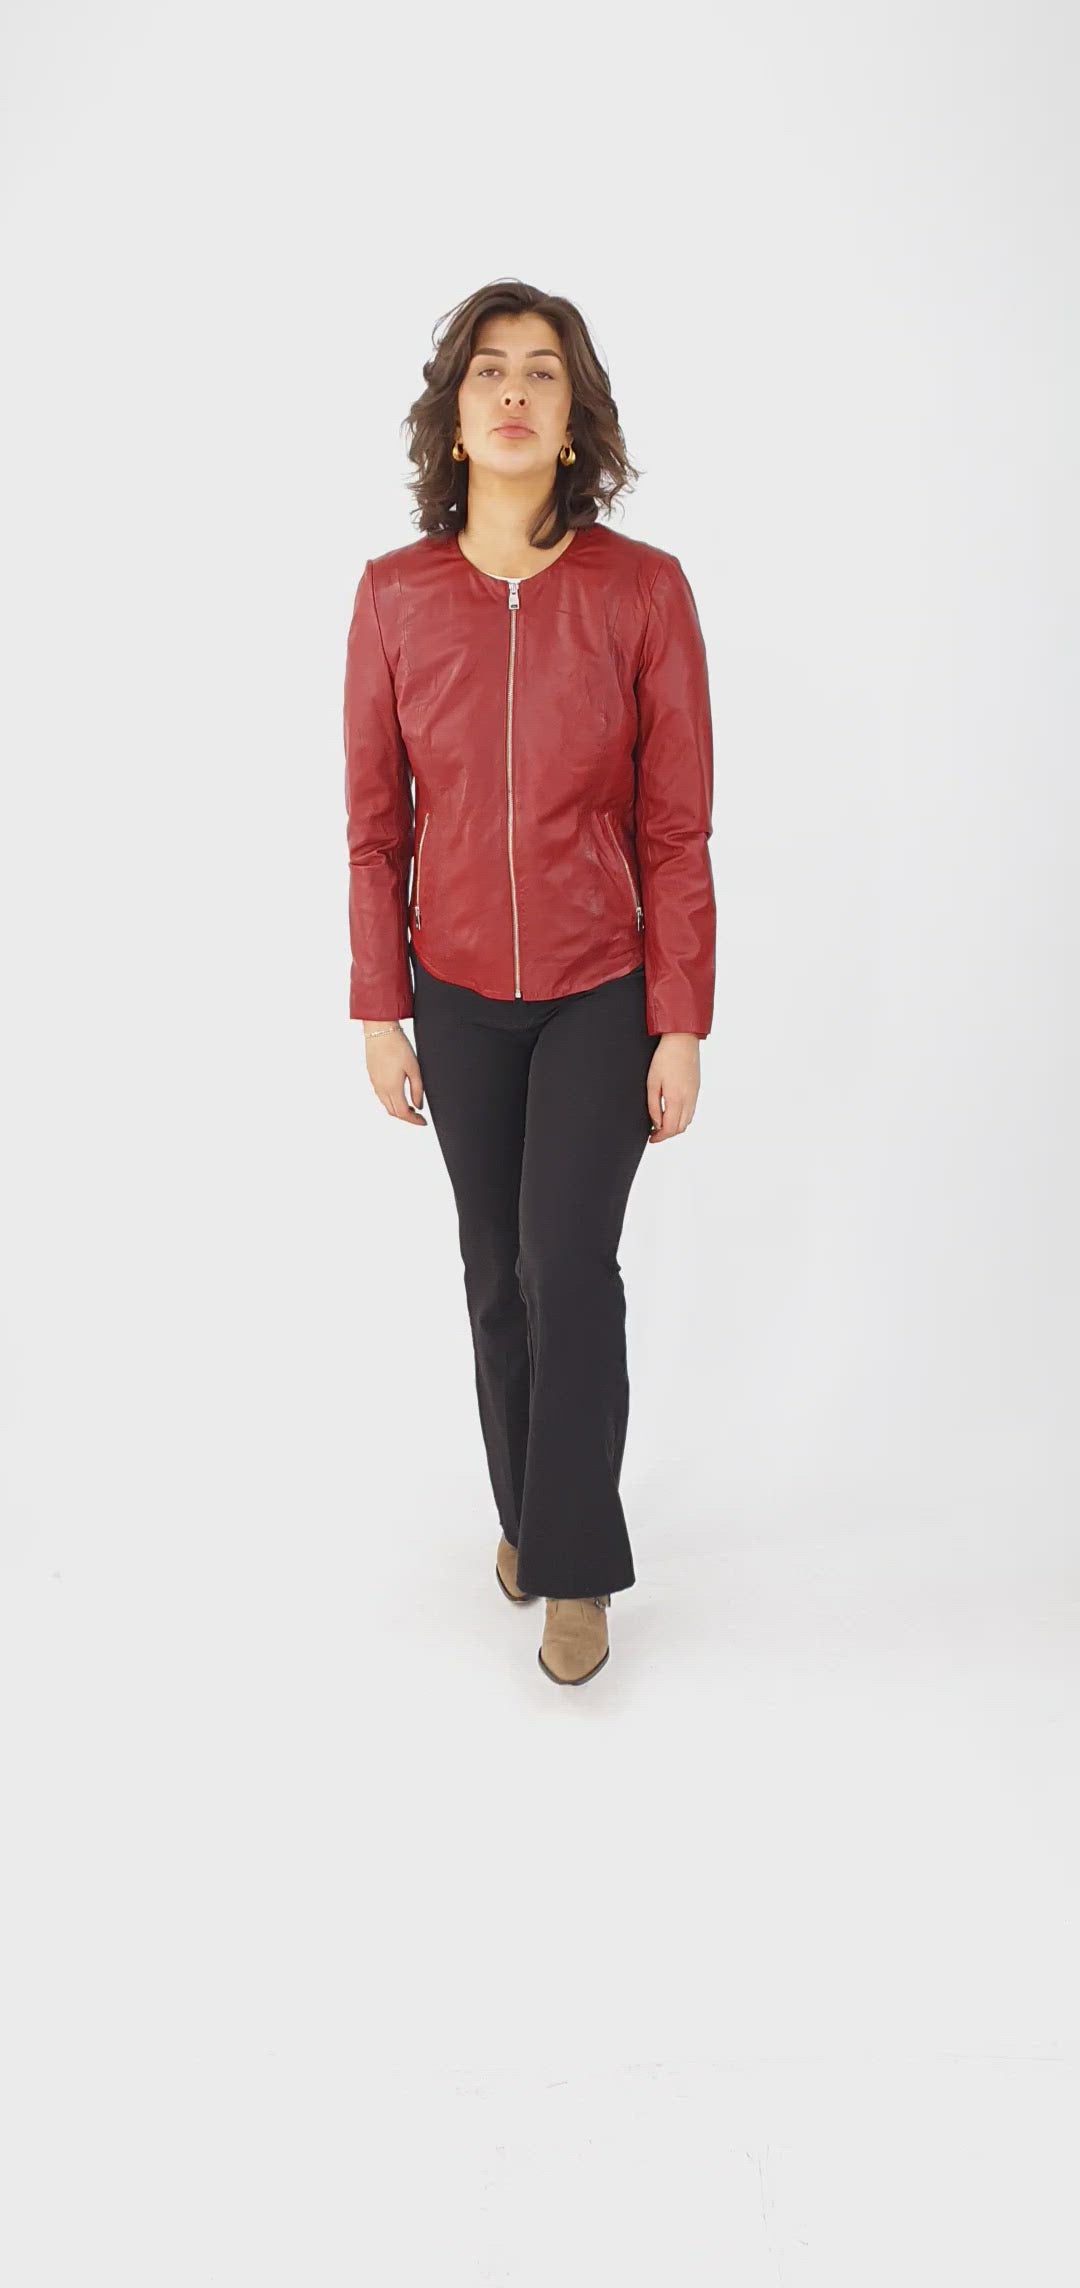 PP 108 - Comfort - Lamb Malli Leather - Women - Red / Læder Skinds Jakke - Levinsky - Kvinde